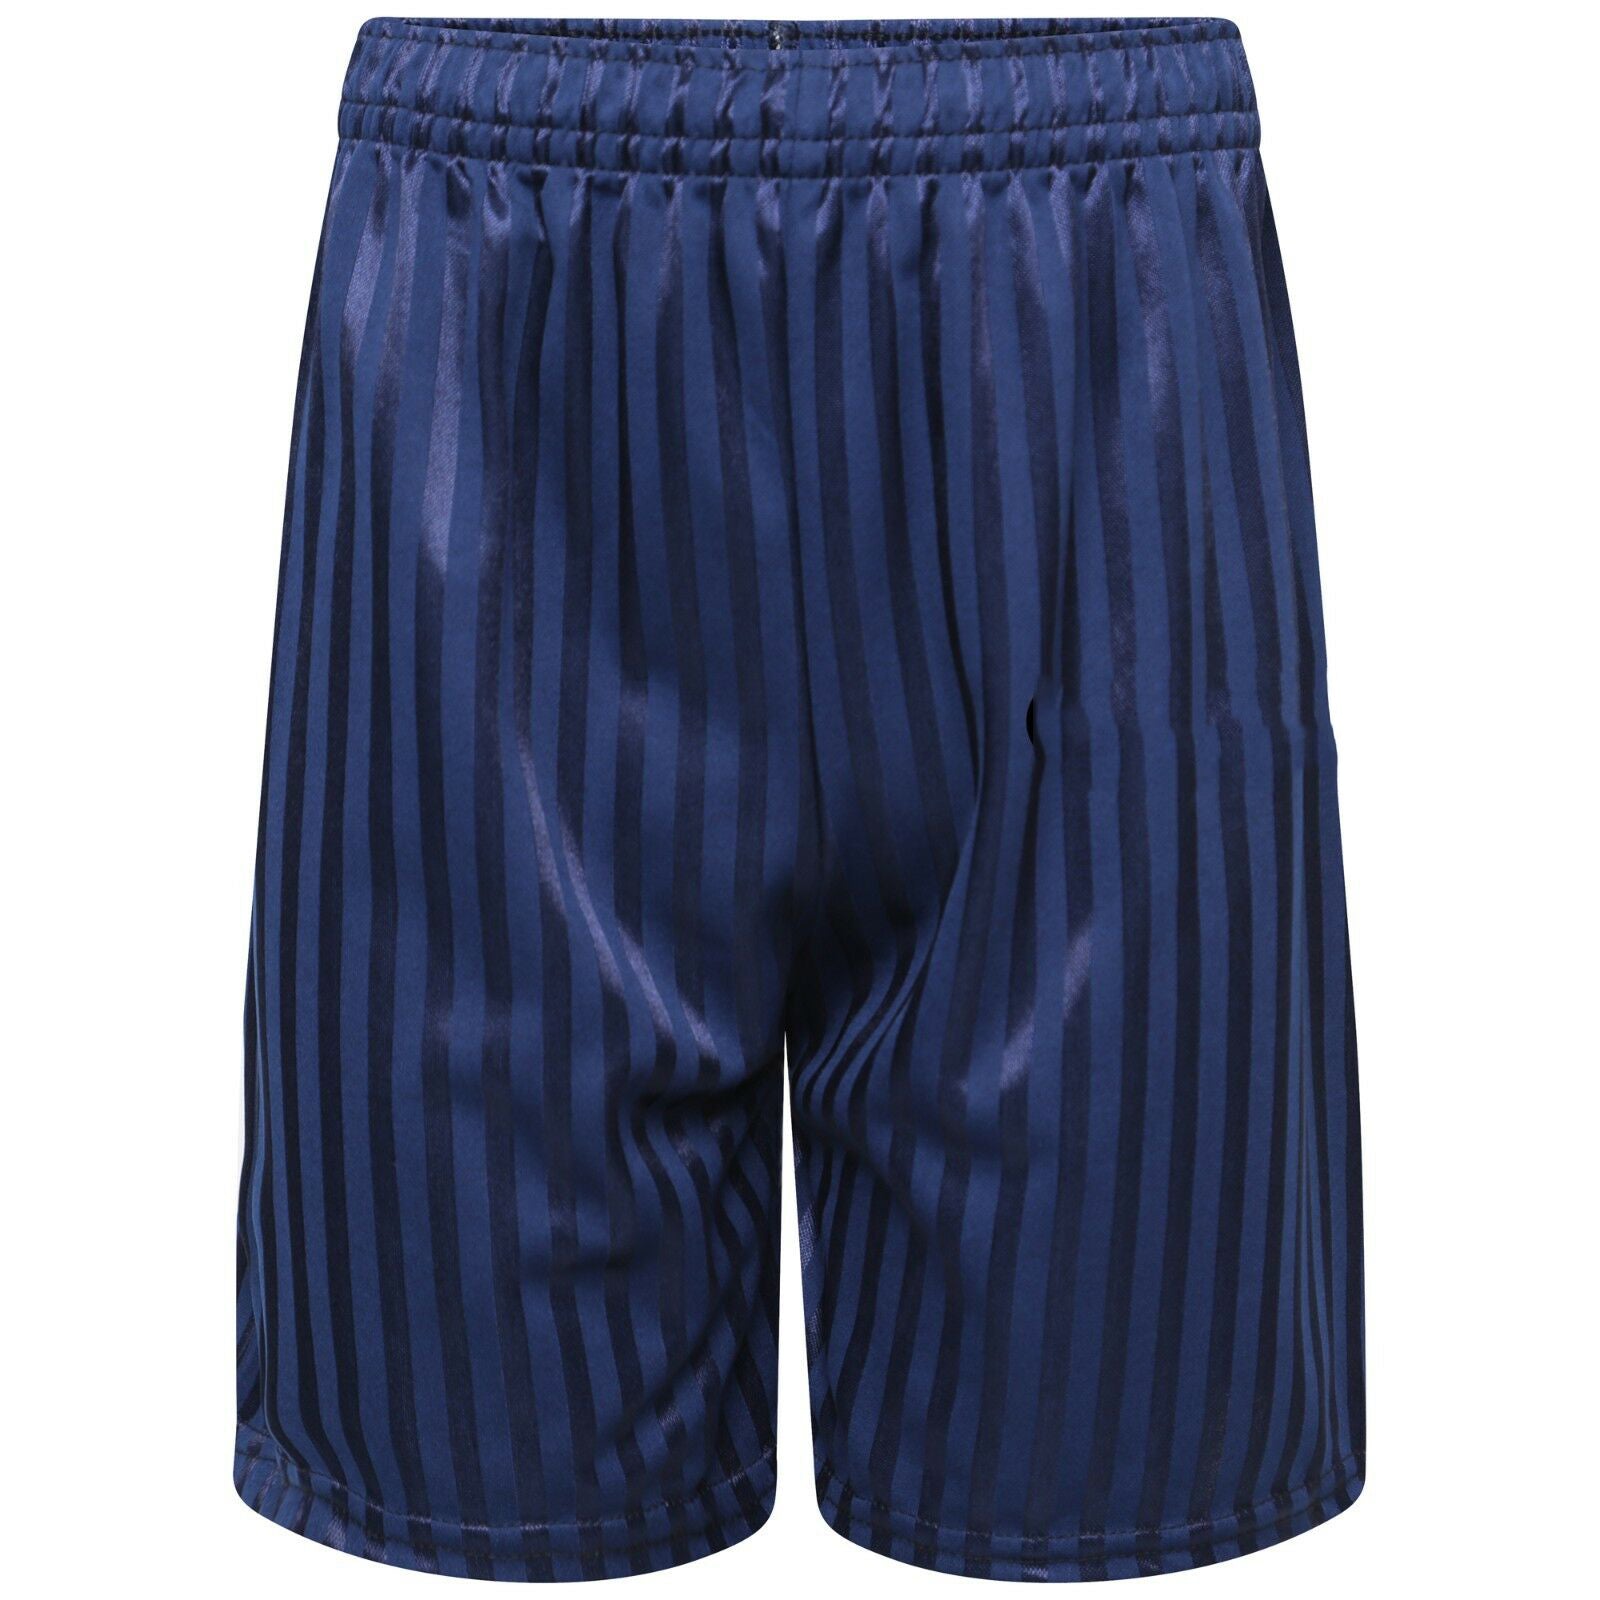 Unisex PE School Shadow Stripe Shorts Boys Girls Adult Football Gym Sports Short -Navy Blue